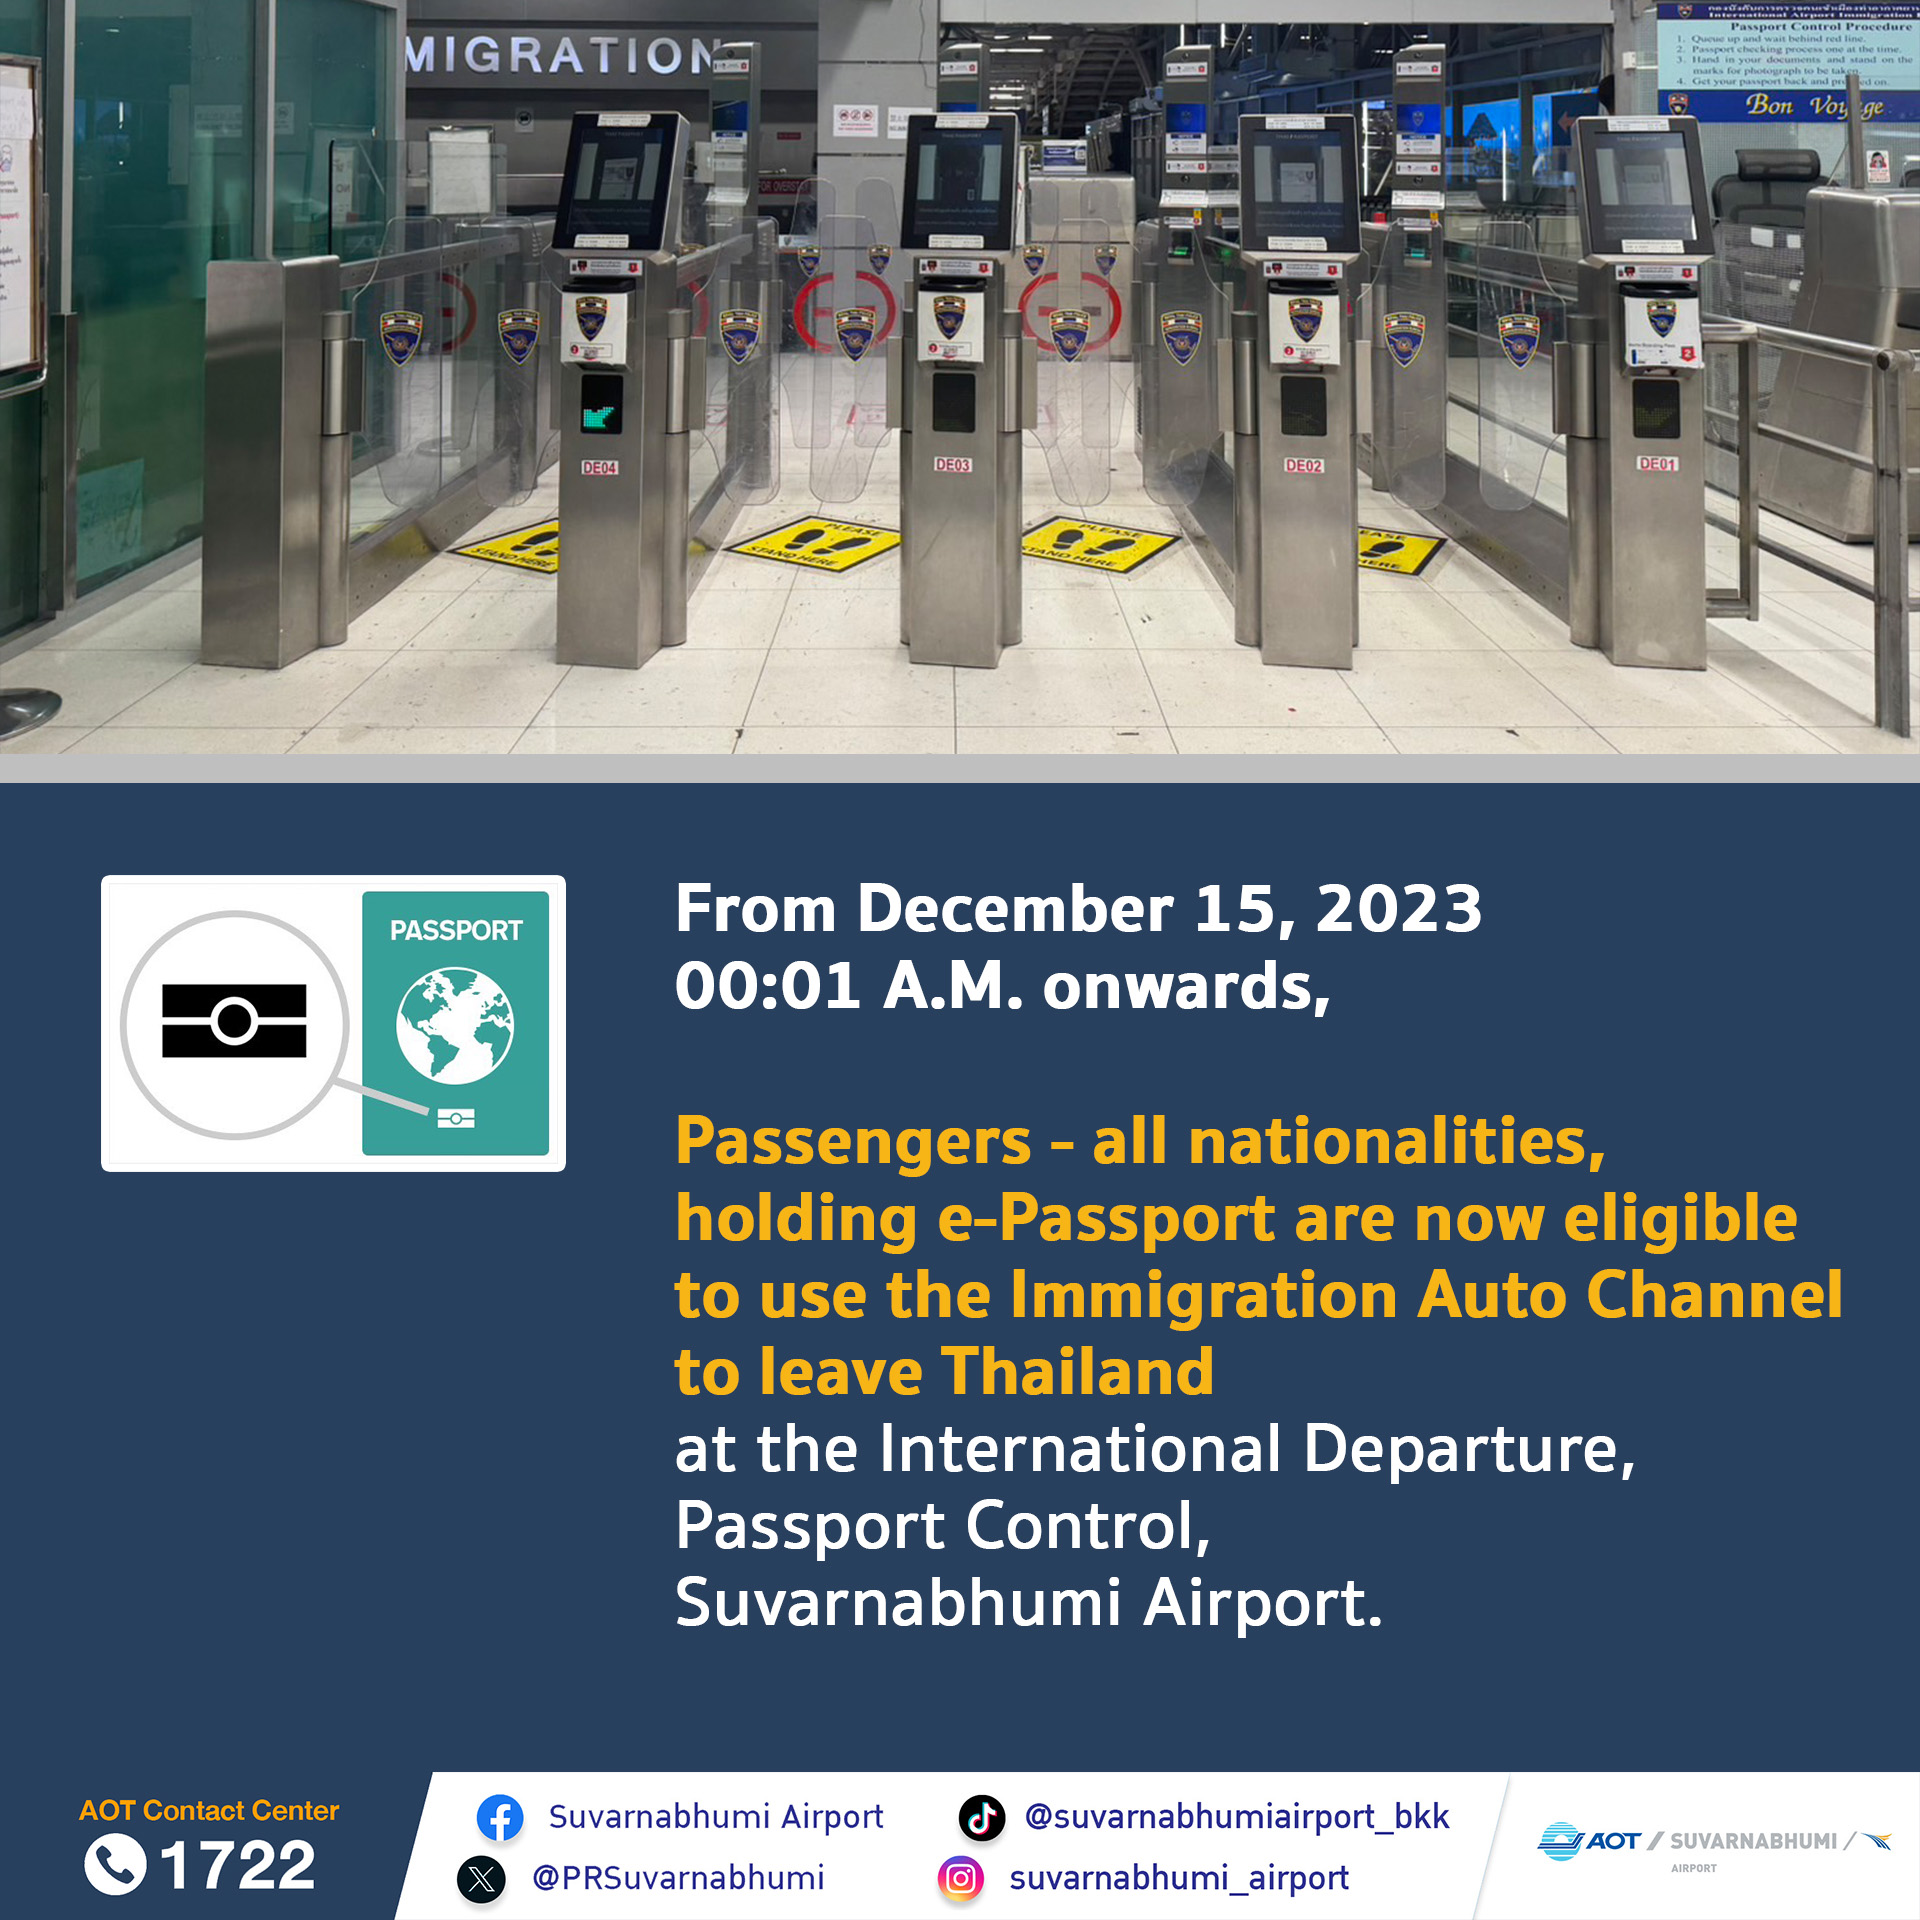 ตั้งแต่วันที่ 15 ธันวาคม พ.ศ.2566 เวลา 00.01 น. เป็นต้นไป ผู้ถือหนังสือเดินทางอิเล็กทรอนิกส์ (e-Passport) ทุกสัญชาติสามารถใช้ช่องตรวจหนังสือเดินทางอัตโนมัติ (Auto Channel) เดินทางออกนอกราชอาณาจักร ณ จุดตรวจหนังสือเดินทางผู้โดยสารขาออกระหว่างประเทศ ด่านตรวจคนเข้าเมืองท่าอากาศยานสุวรรณภูมิ ✈️💙 From December 15, 2023 00:01 A.M. onwards, ❗️ 📕🛫Passengers - all nationalities, holding e-Passport are now eligible to use the Immigration Auto Channel to leave Thailand at the International Departure, Passport Control, Suvarnabhumi Airport.📍❤️